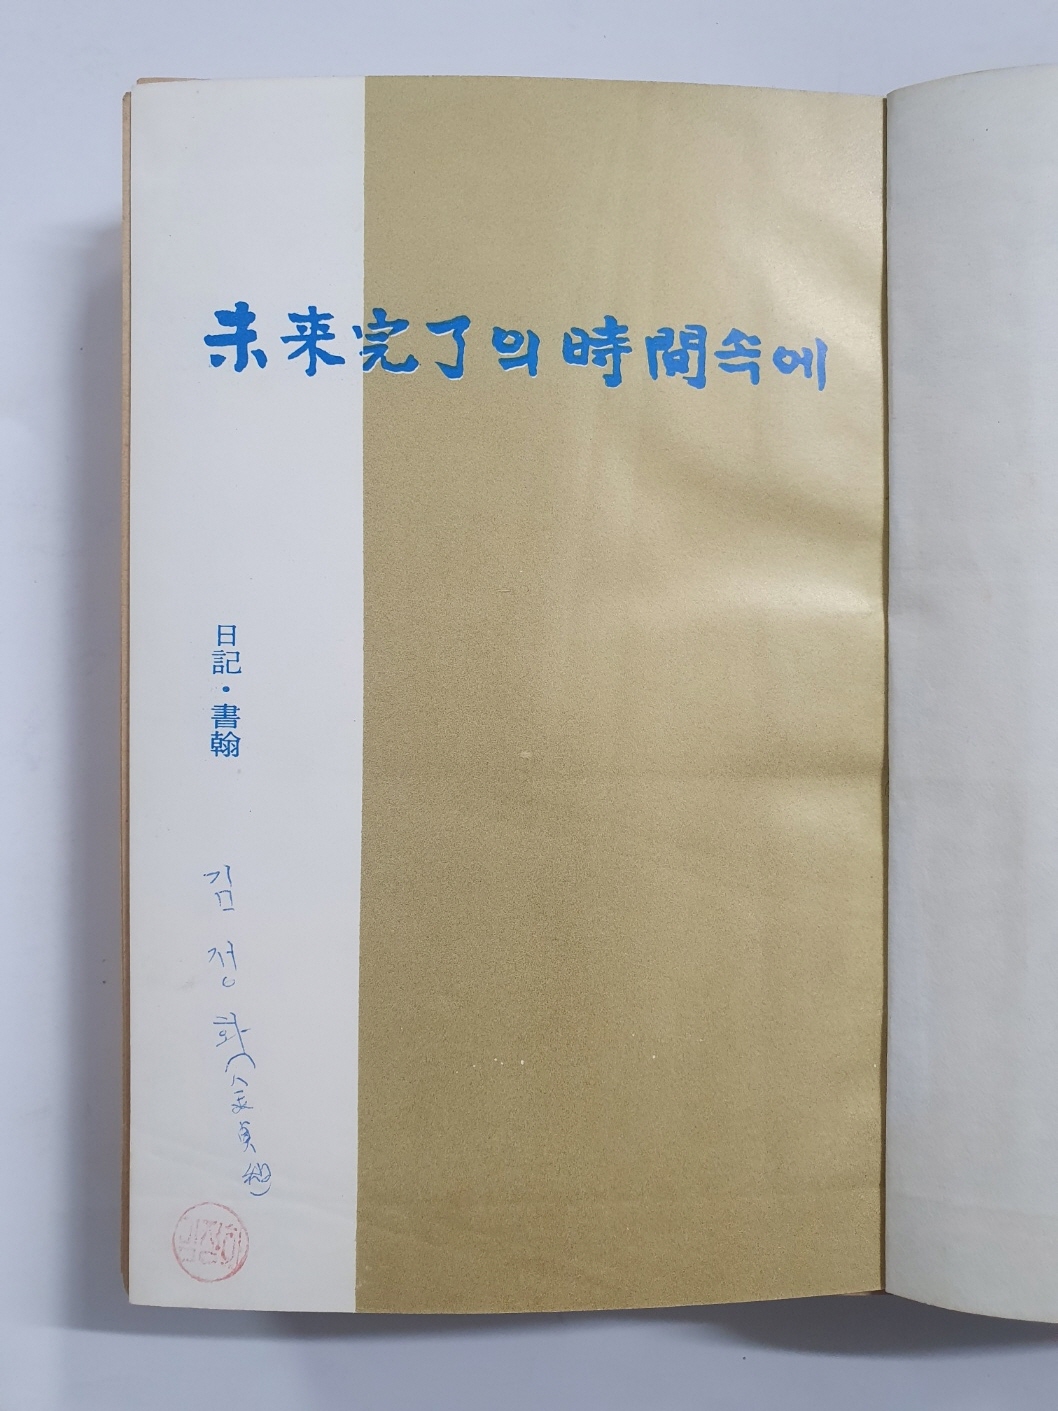 전혜린수필집 [미래완료의 시간속에] 1966 초판, 김정화 소장본